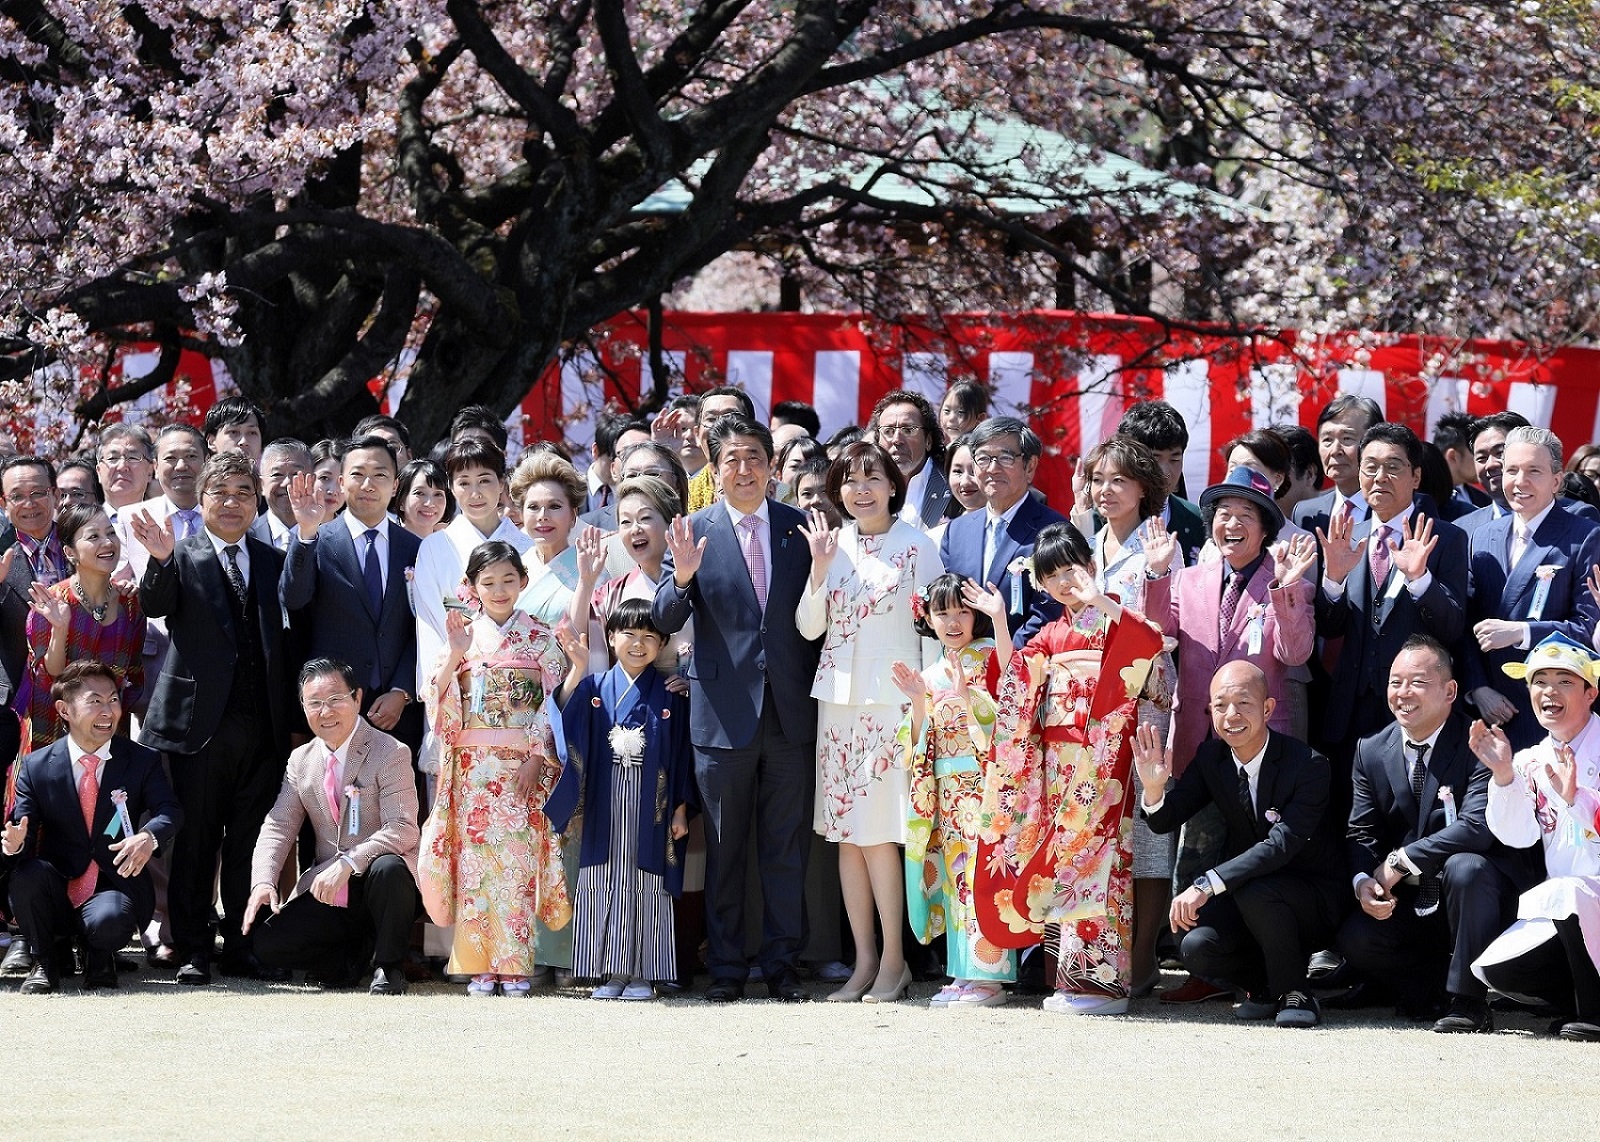 平成31年4月13日 総理主催「桜を見る会」の開催 | 令和元年 | 総理の一